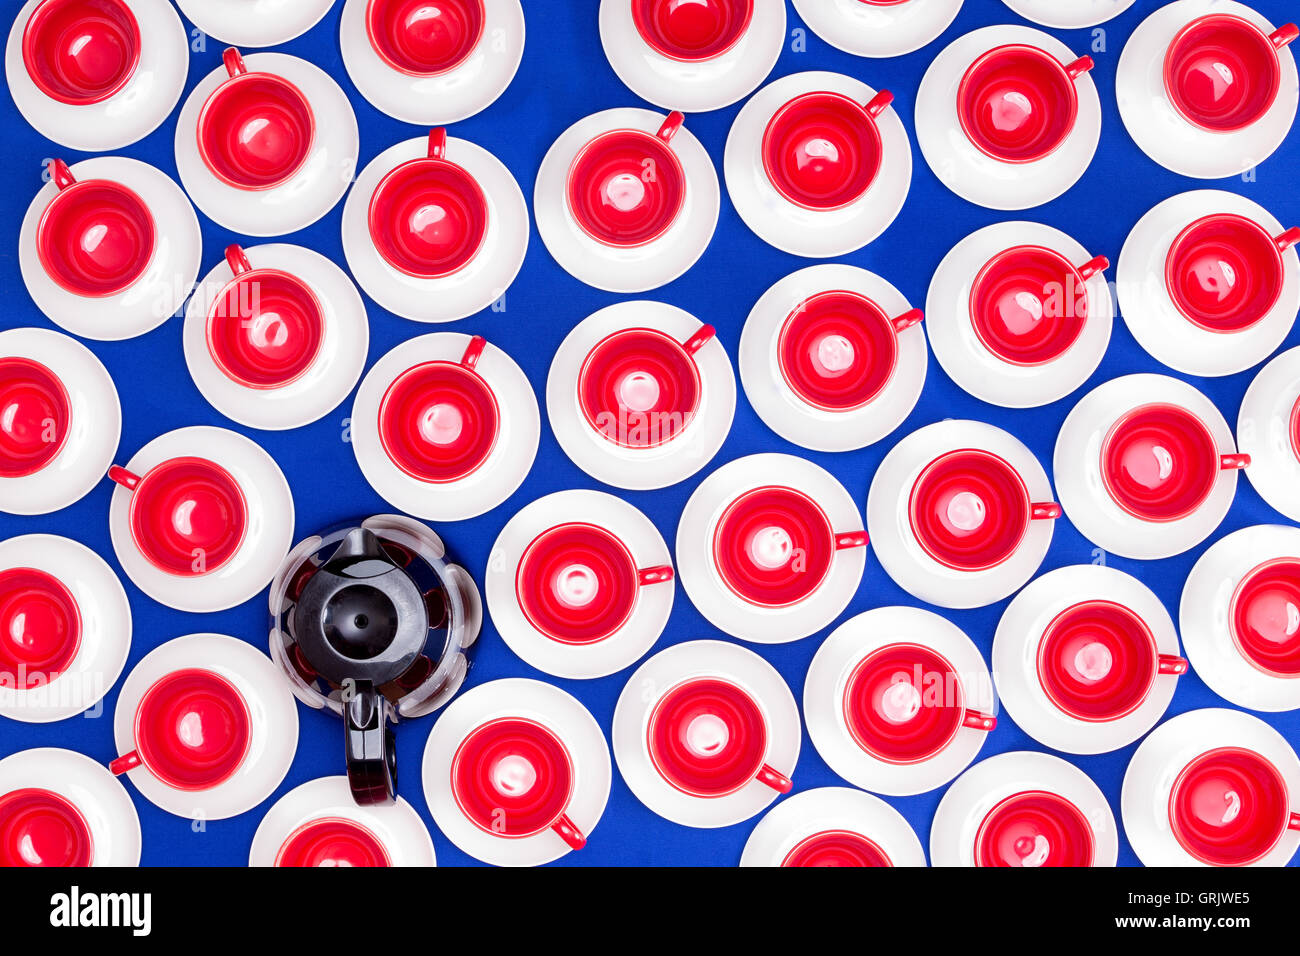 Motif de fond frais généraux de plusieurs tasses et soucoupes colorées lumineuses dans patriot American rouge, blanc et bleu avec Banque D'Images